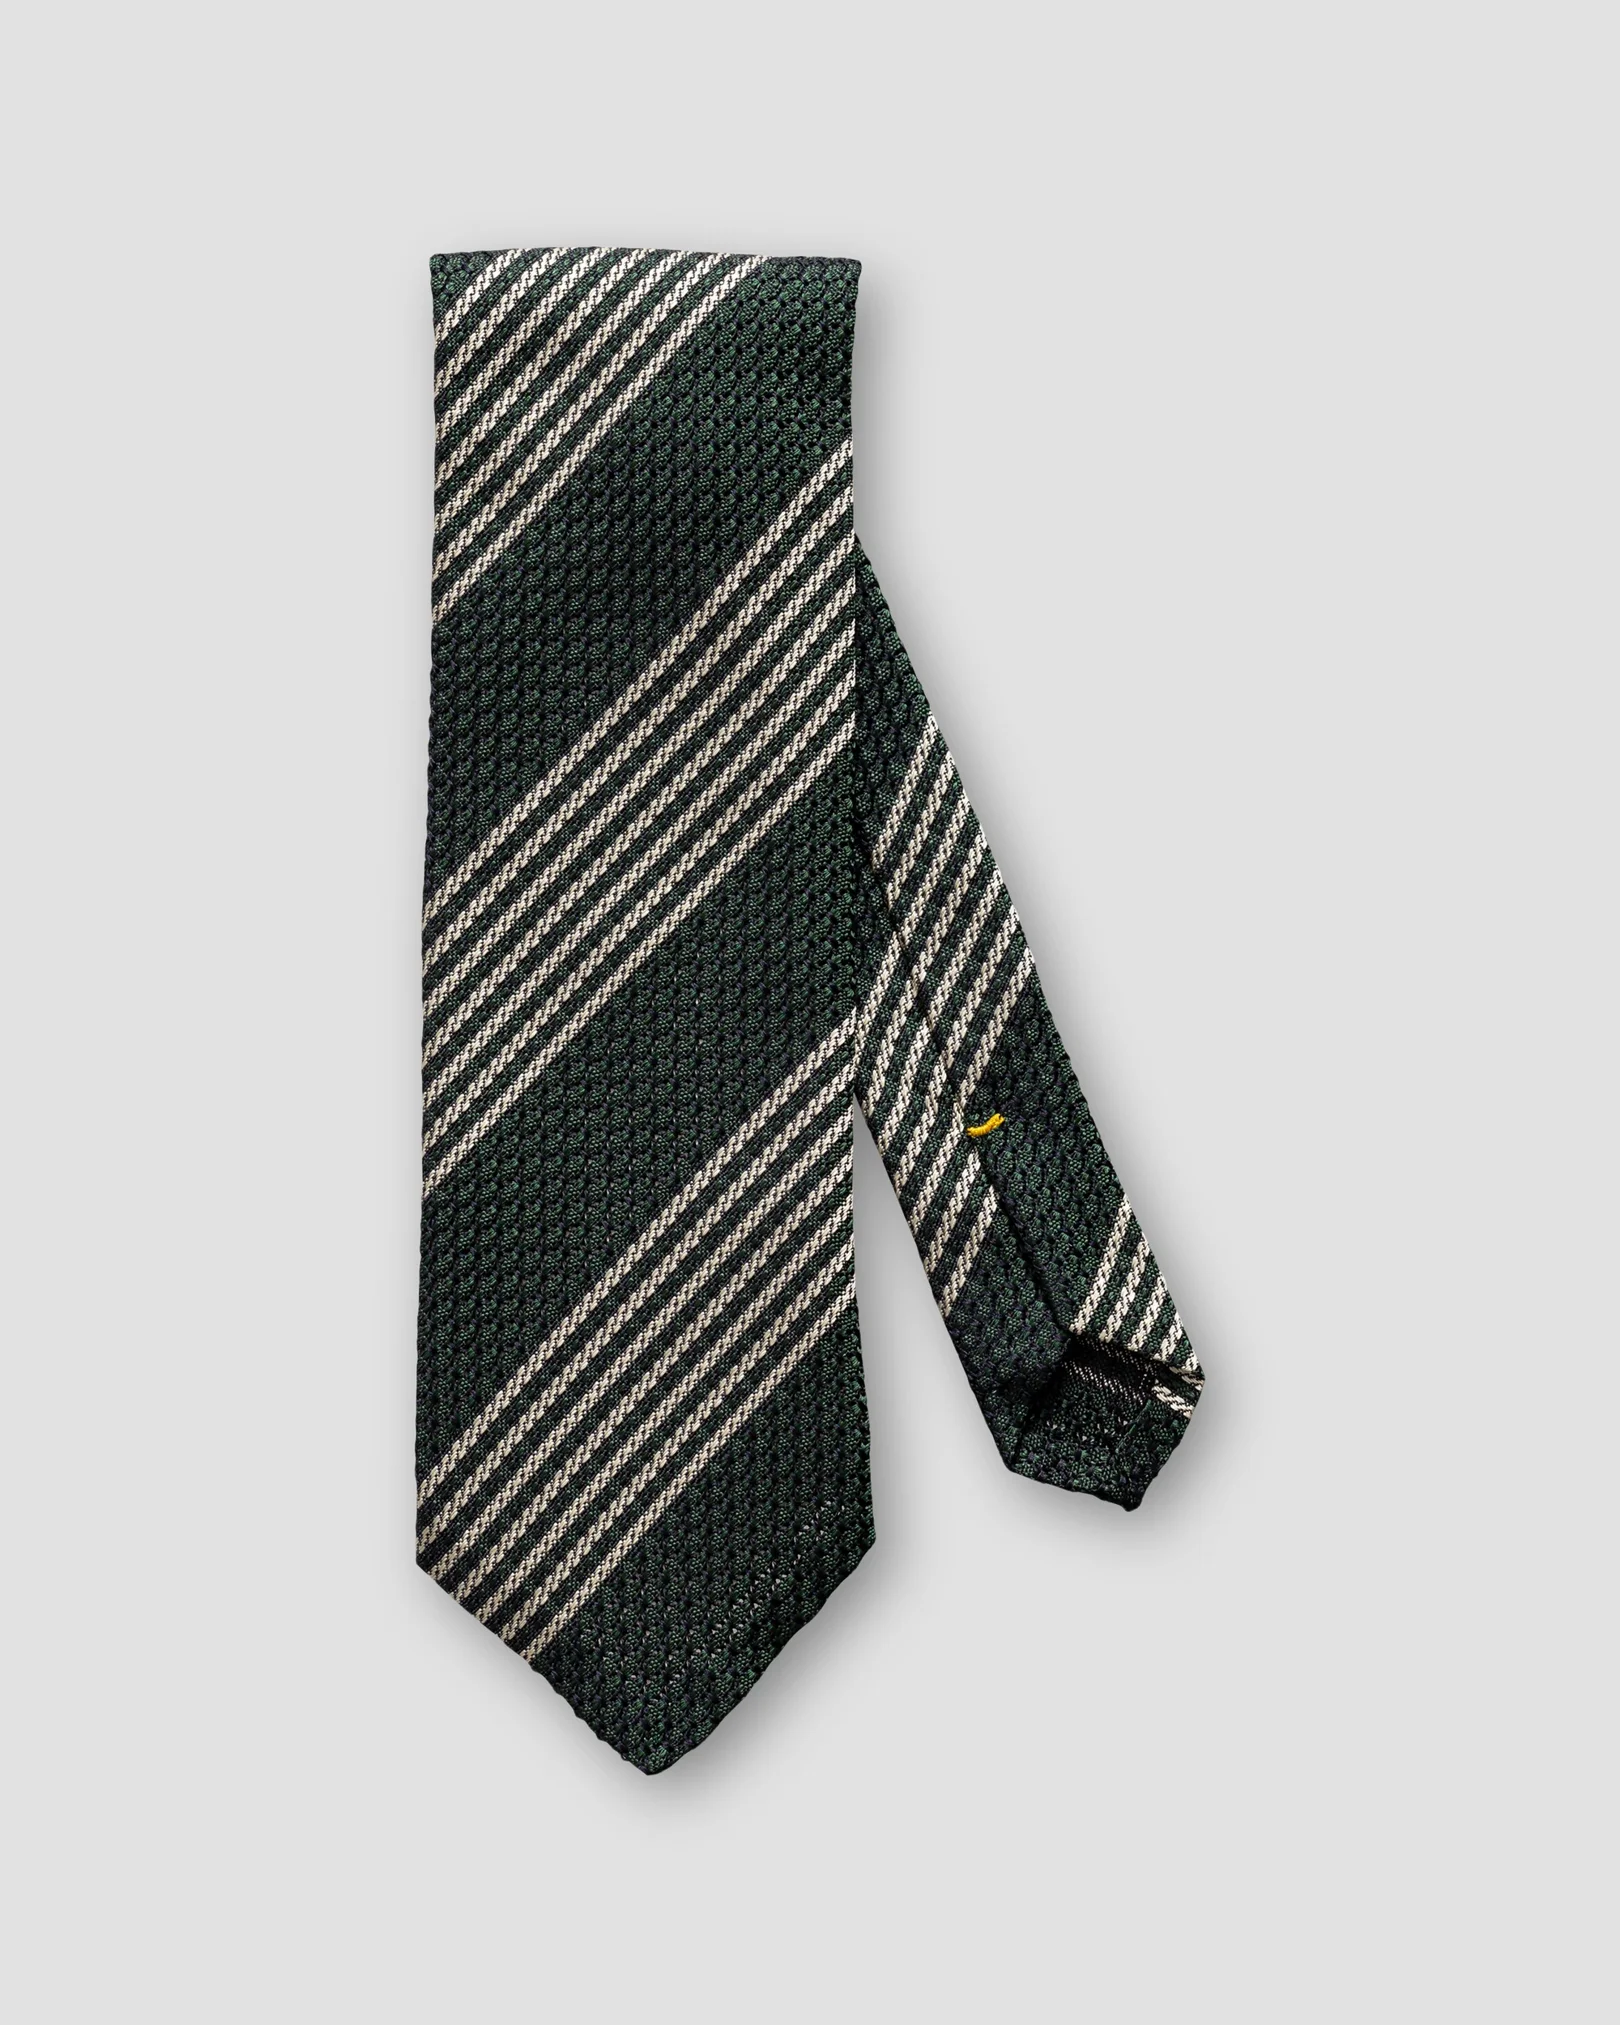 Eton - green white striped tie